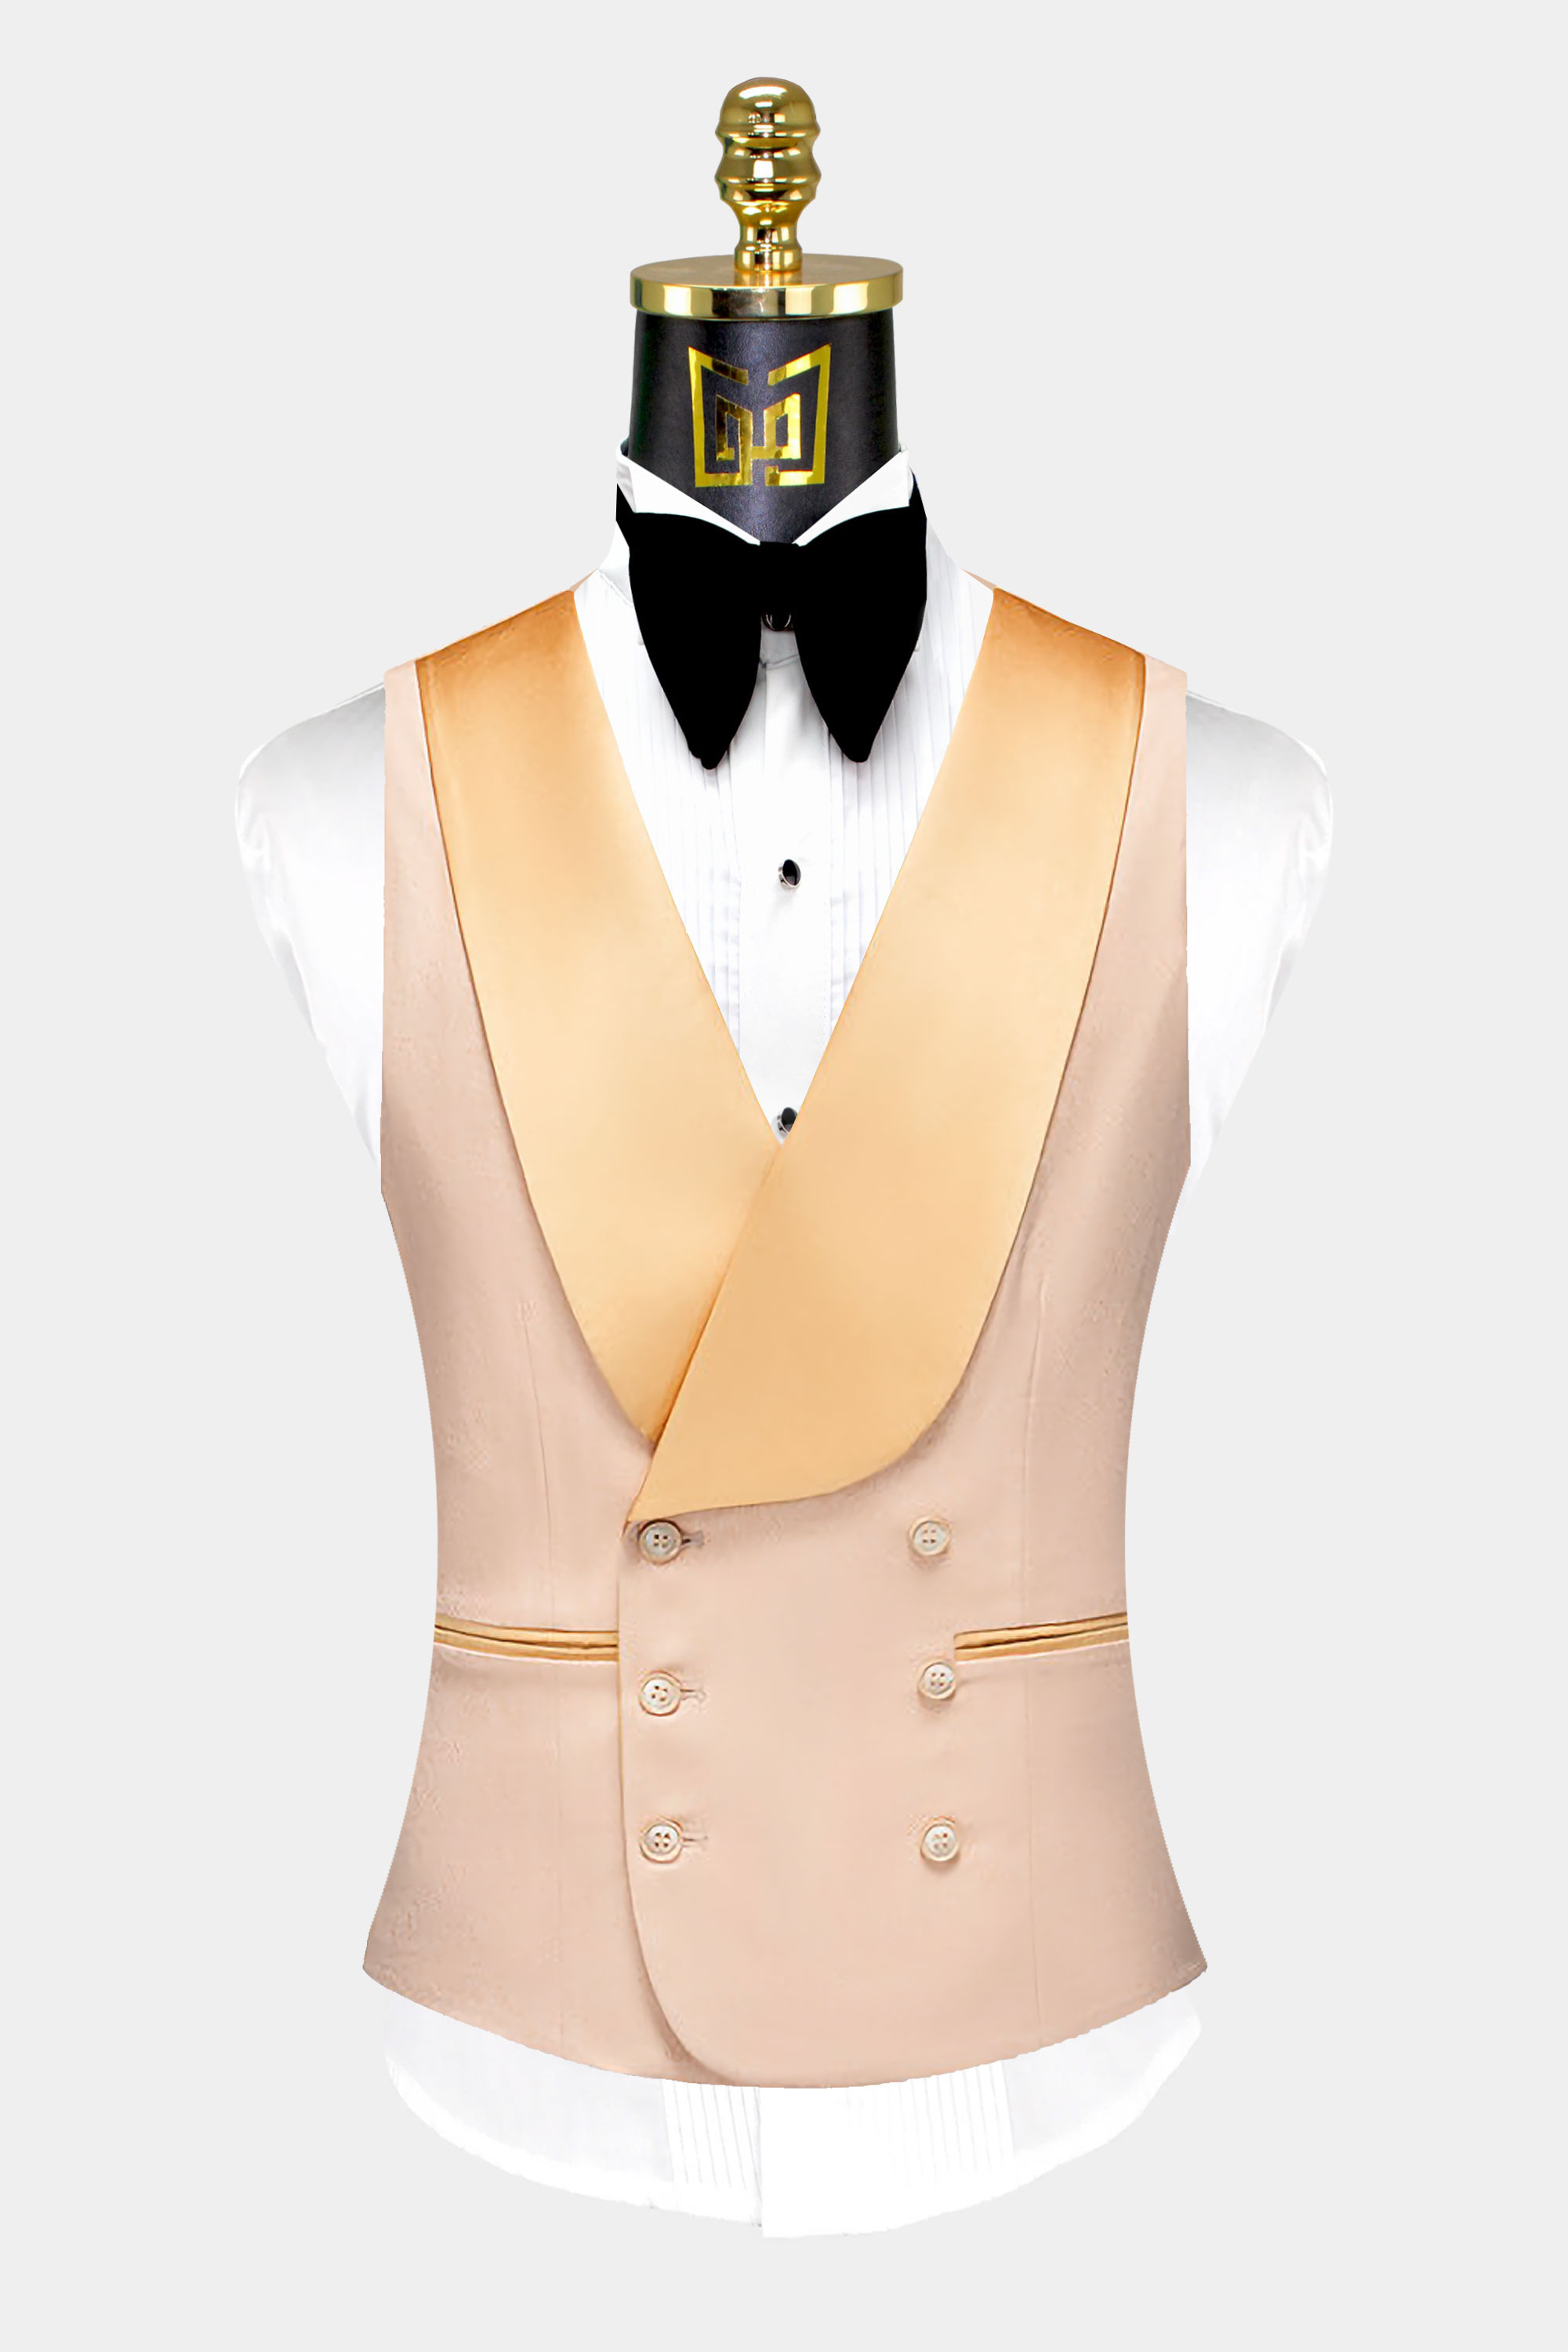 Beige-Tuxedo-Vest-Groom-Wedding-Prom-Waistcoat-from-Gentlemansguru.com